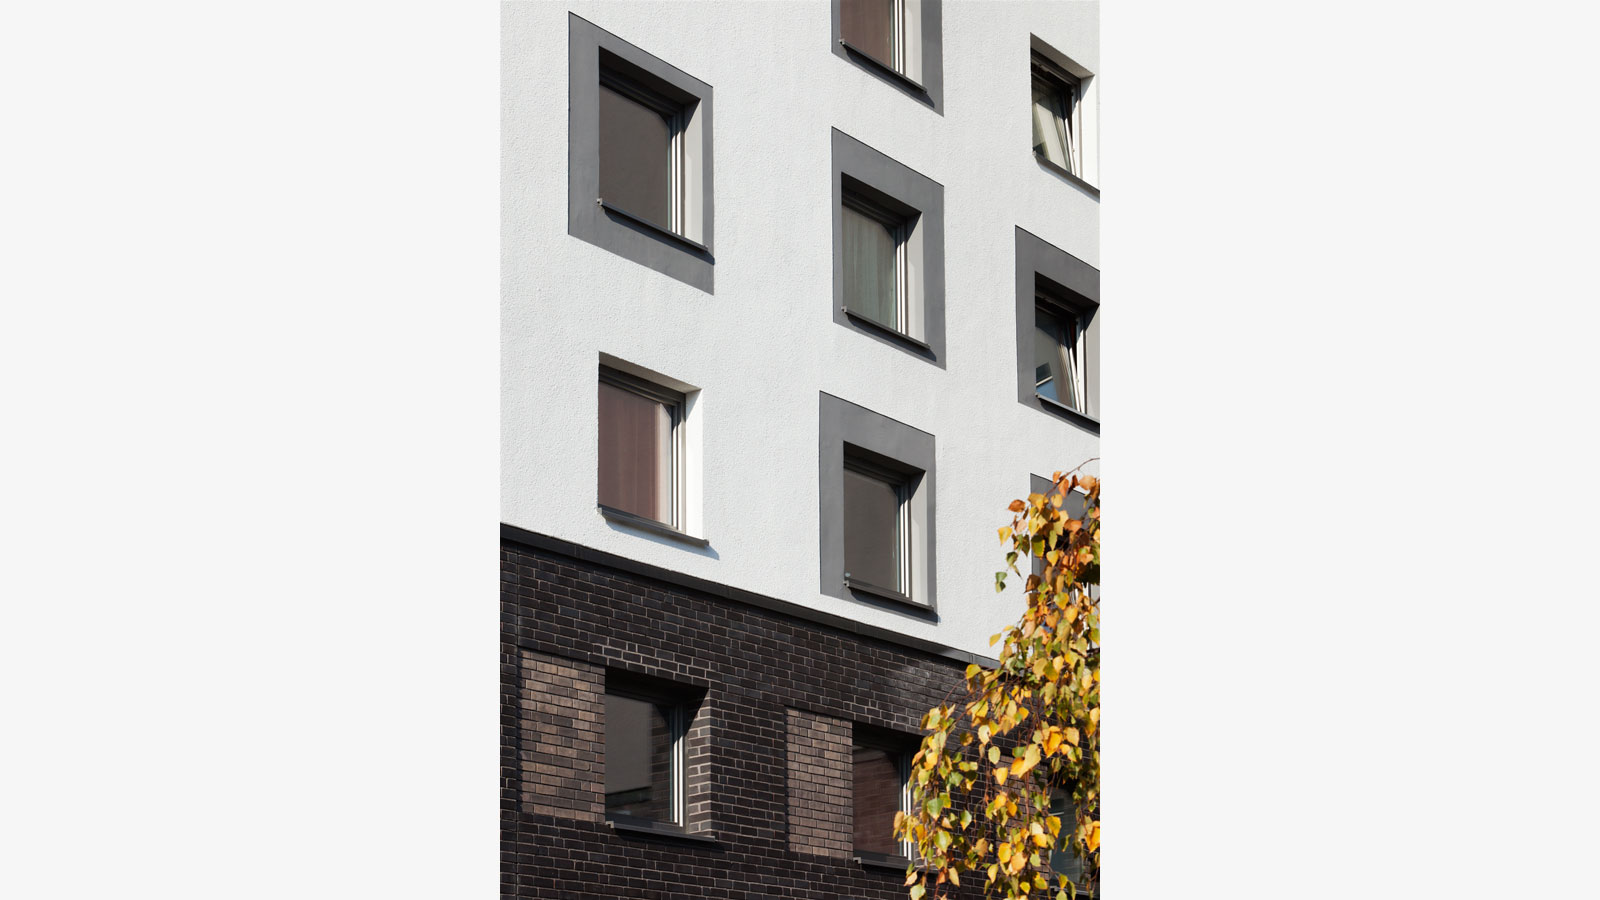 Architekt Bonn Studierendenwohnheim Römerlager - Schadstoffsanierung, energetische Sanierung, WDVS, Klinkerfassade - Koenigs Rütter Architekten Bonn